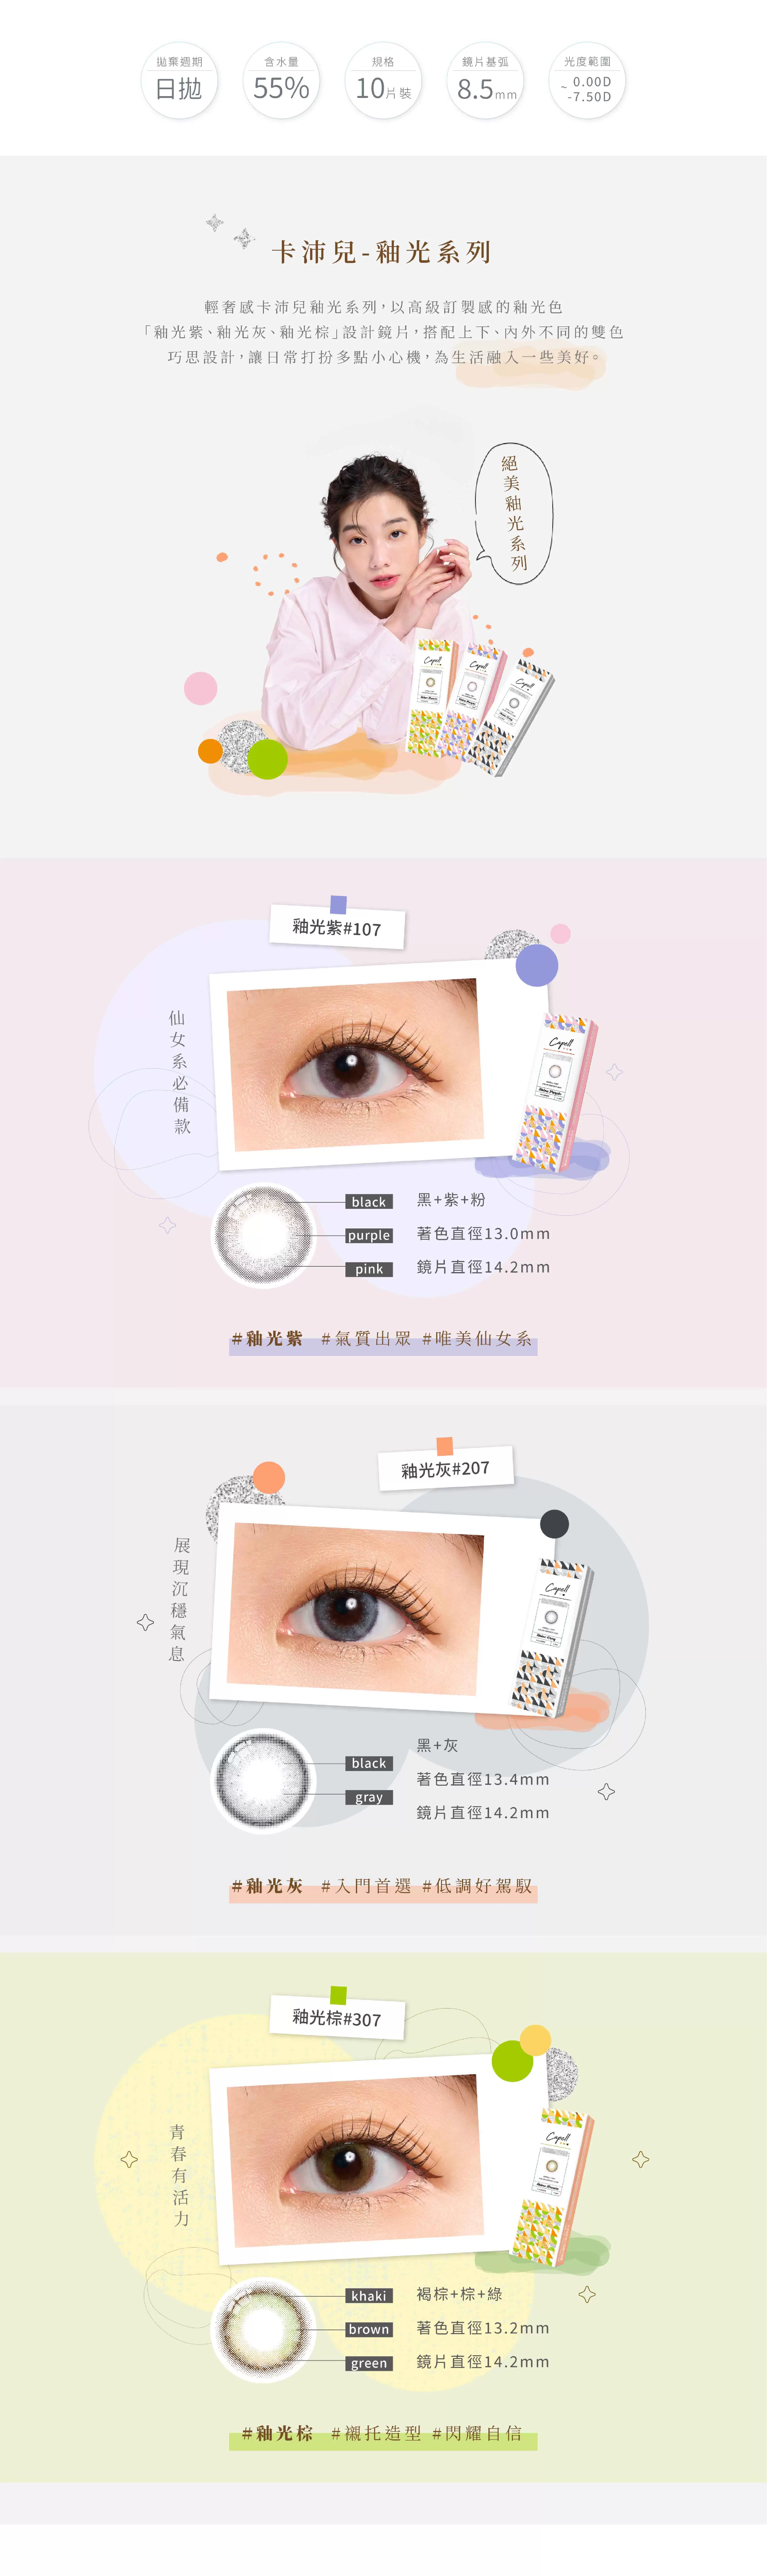 釉光紫,卡沛兒,彩色日拋,清透顯色小直徑,台灣品牌隱形眼鏡